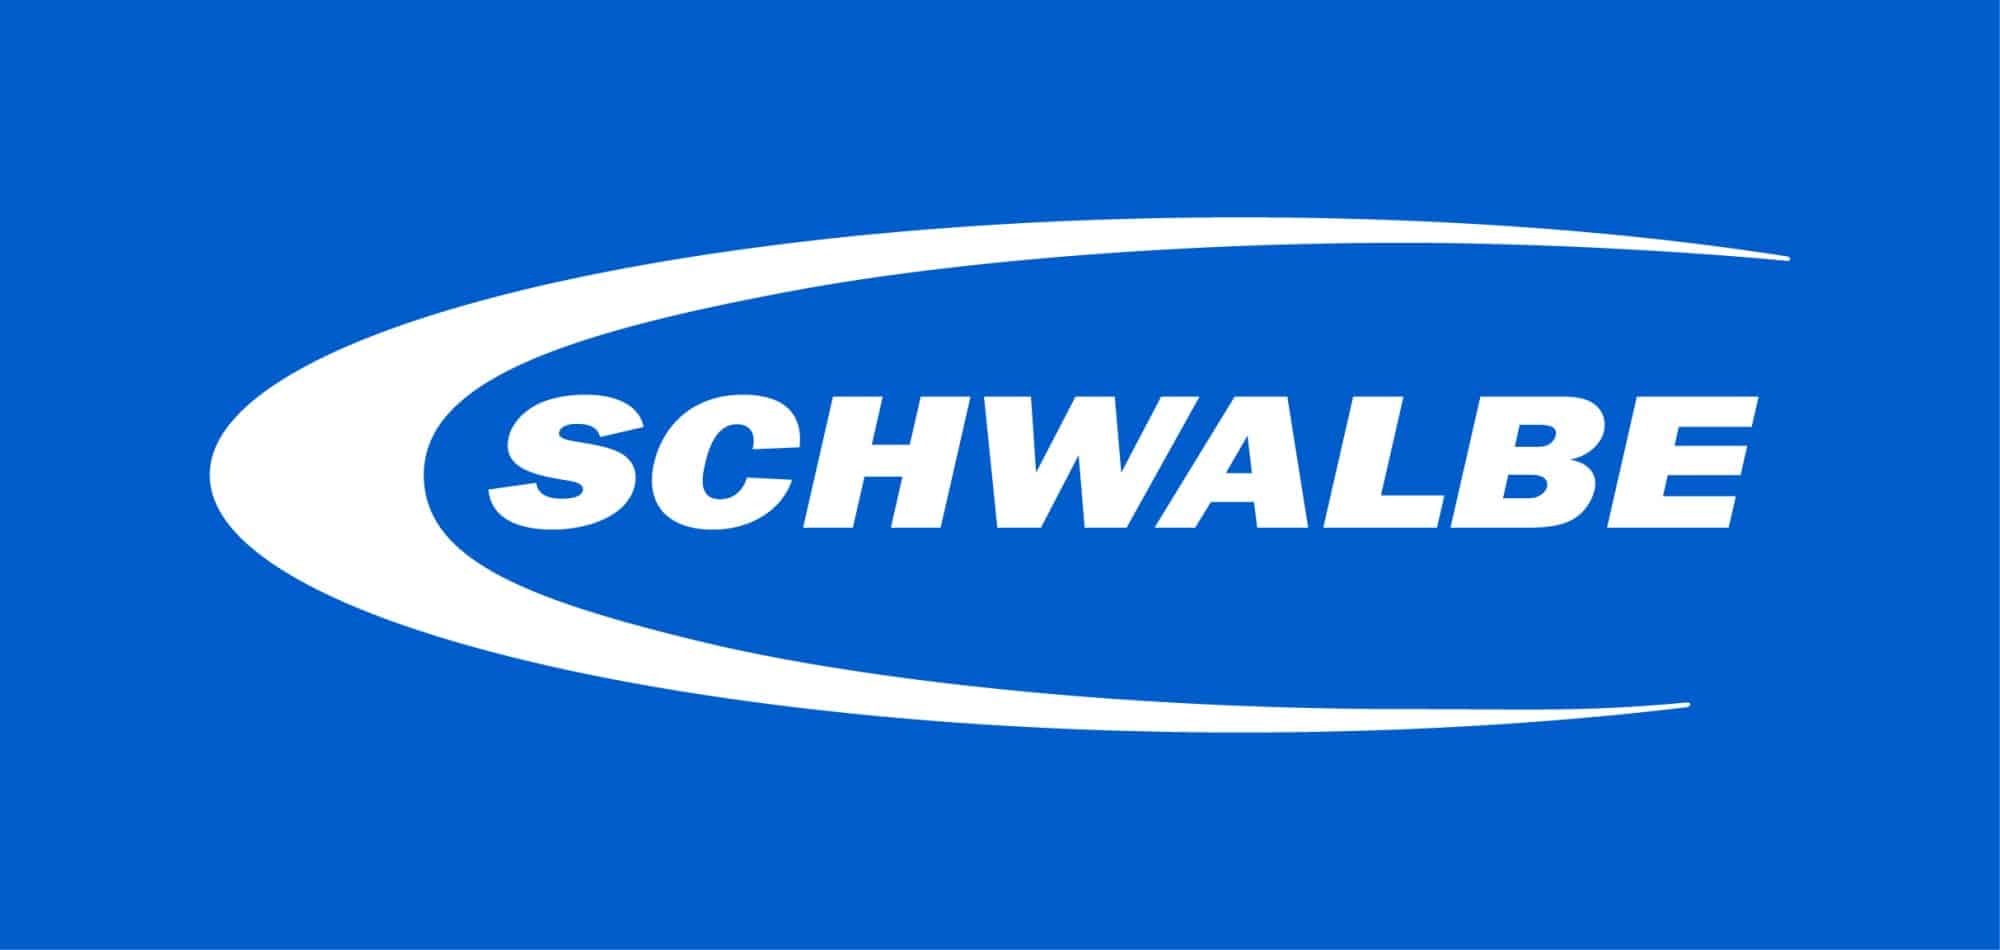 SCHWALBE-logo-2017